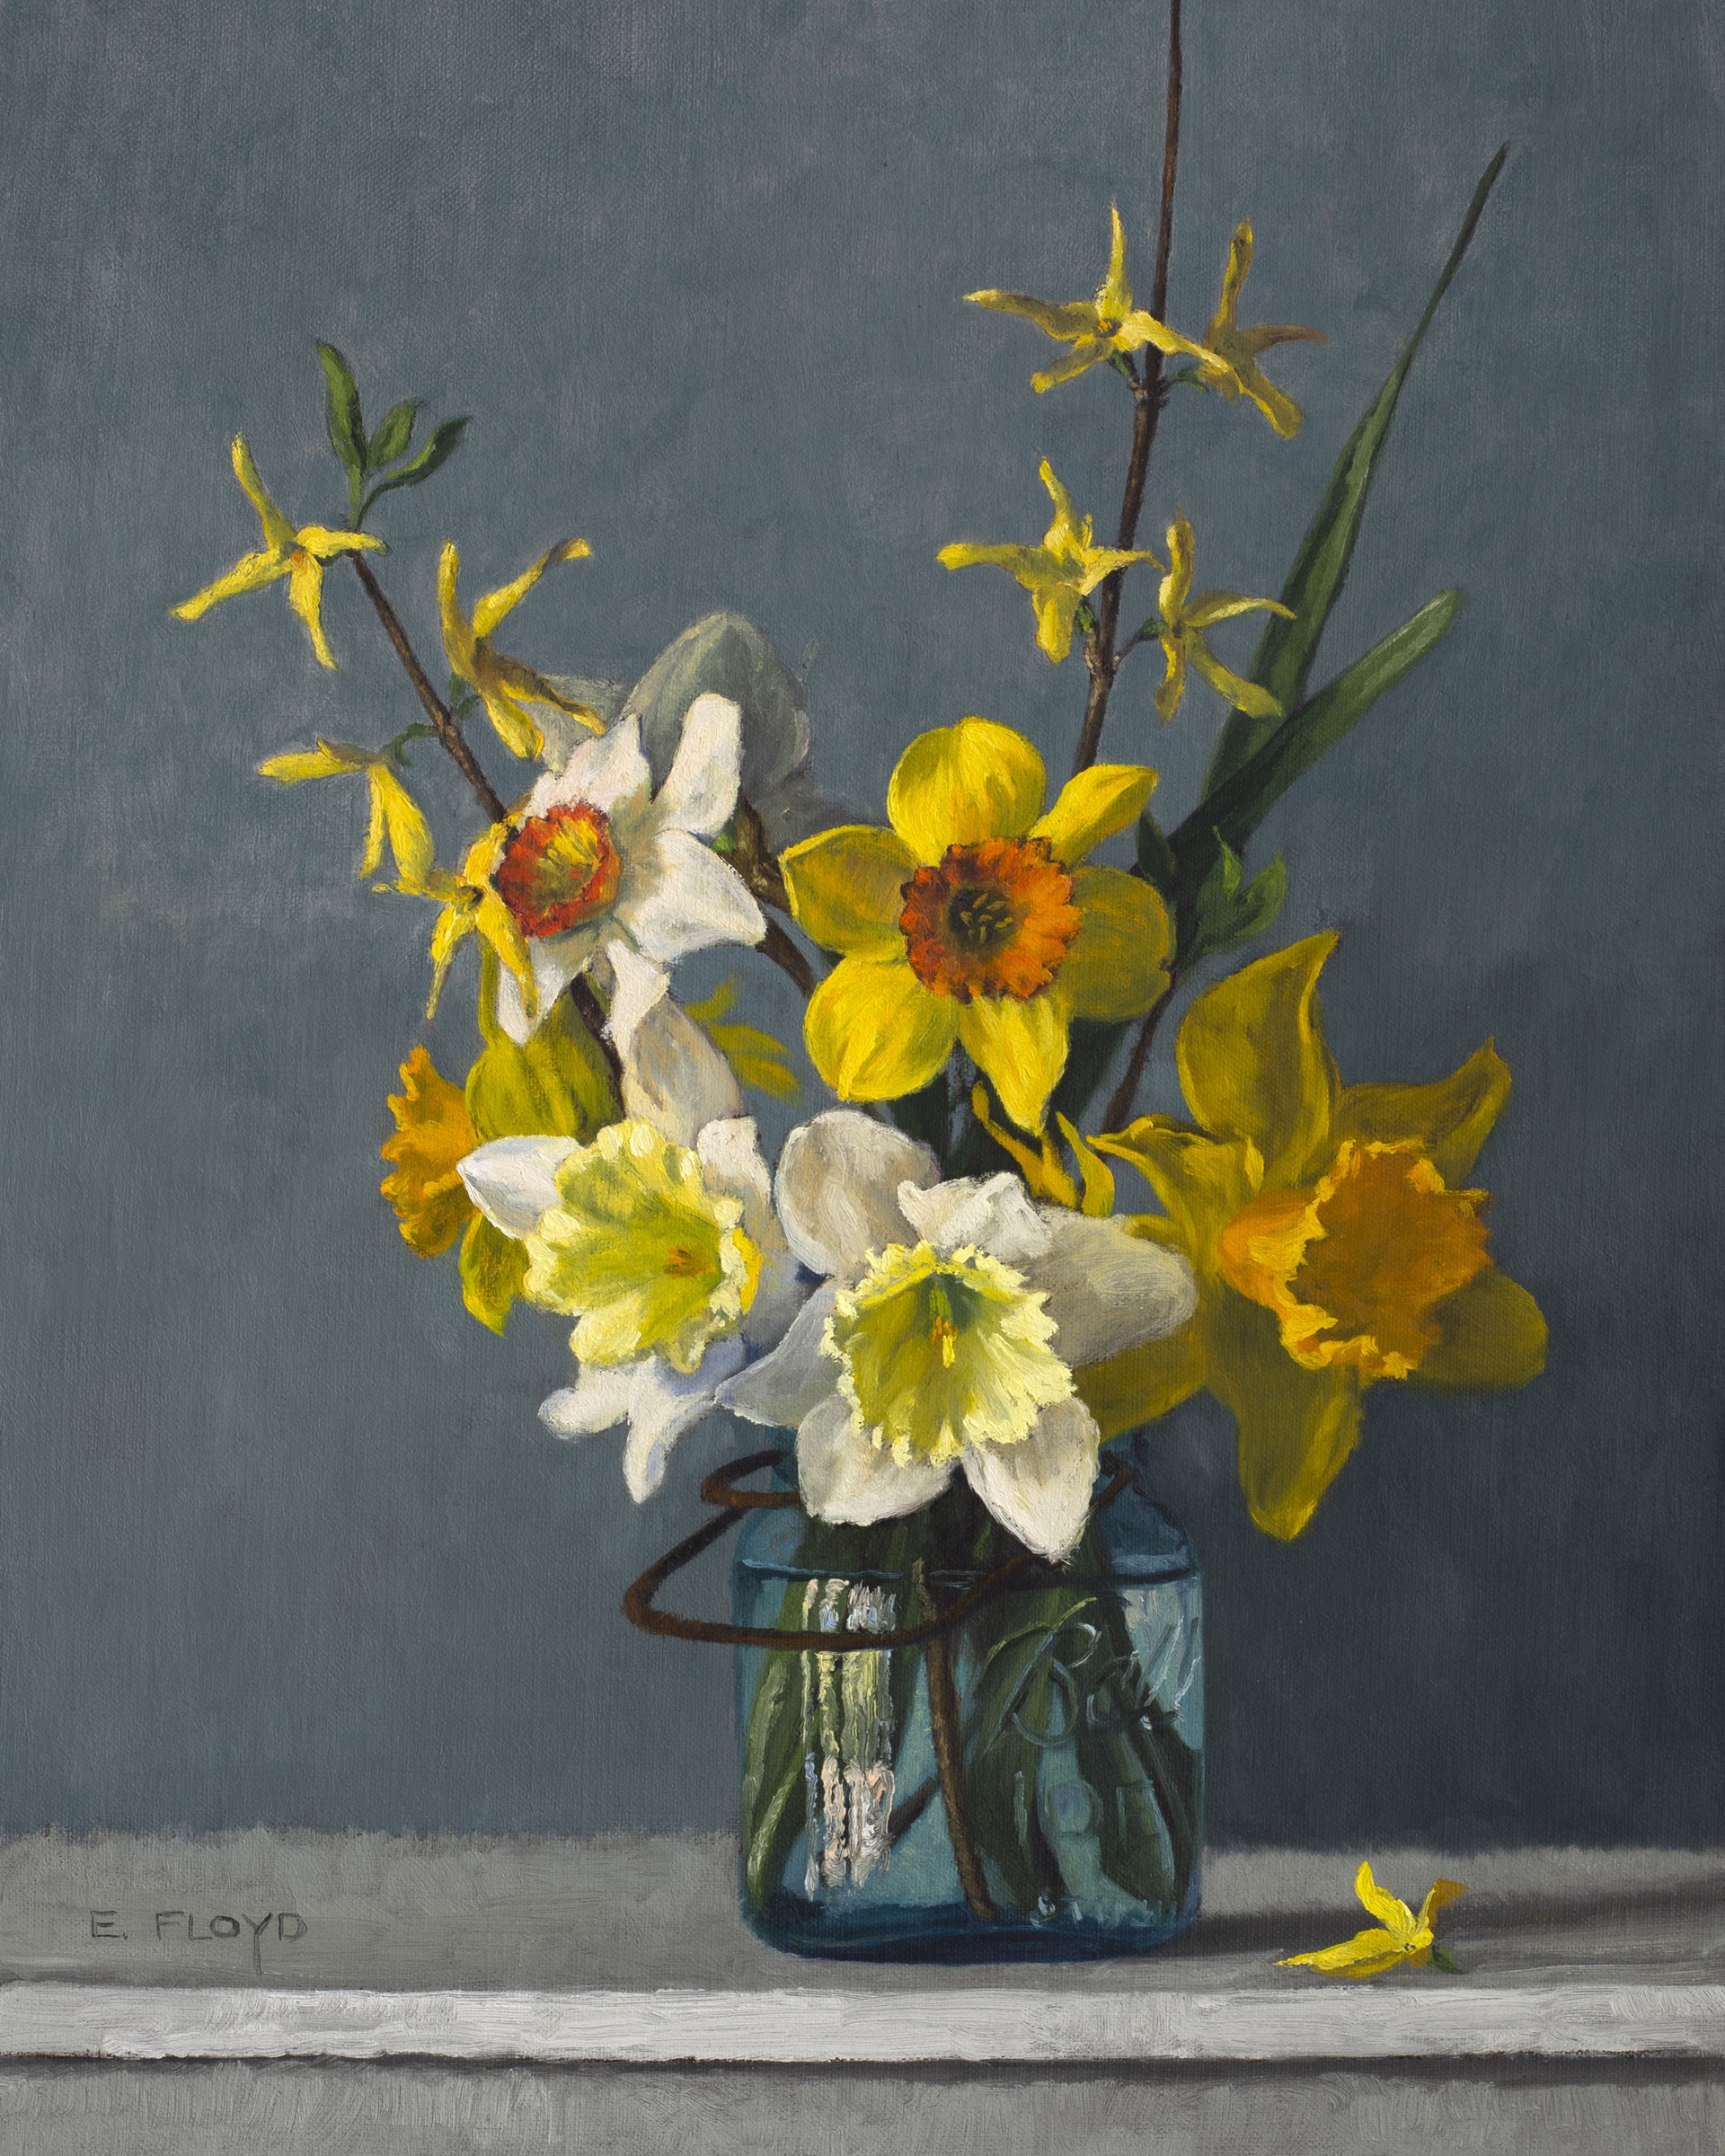 Daffodils and Forsythia by Elizabeth Floyd